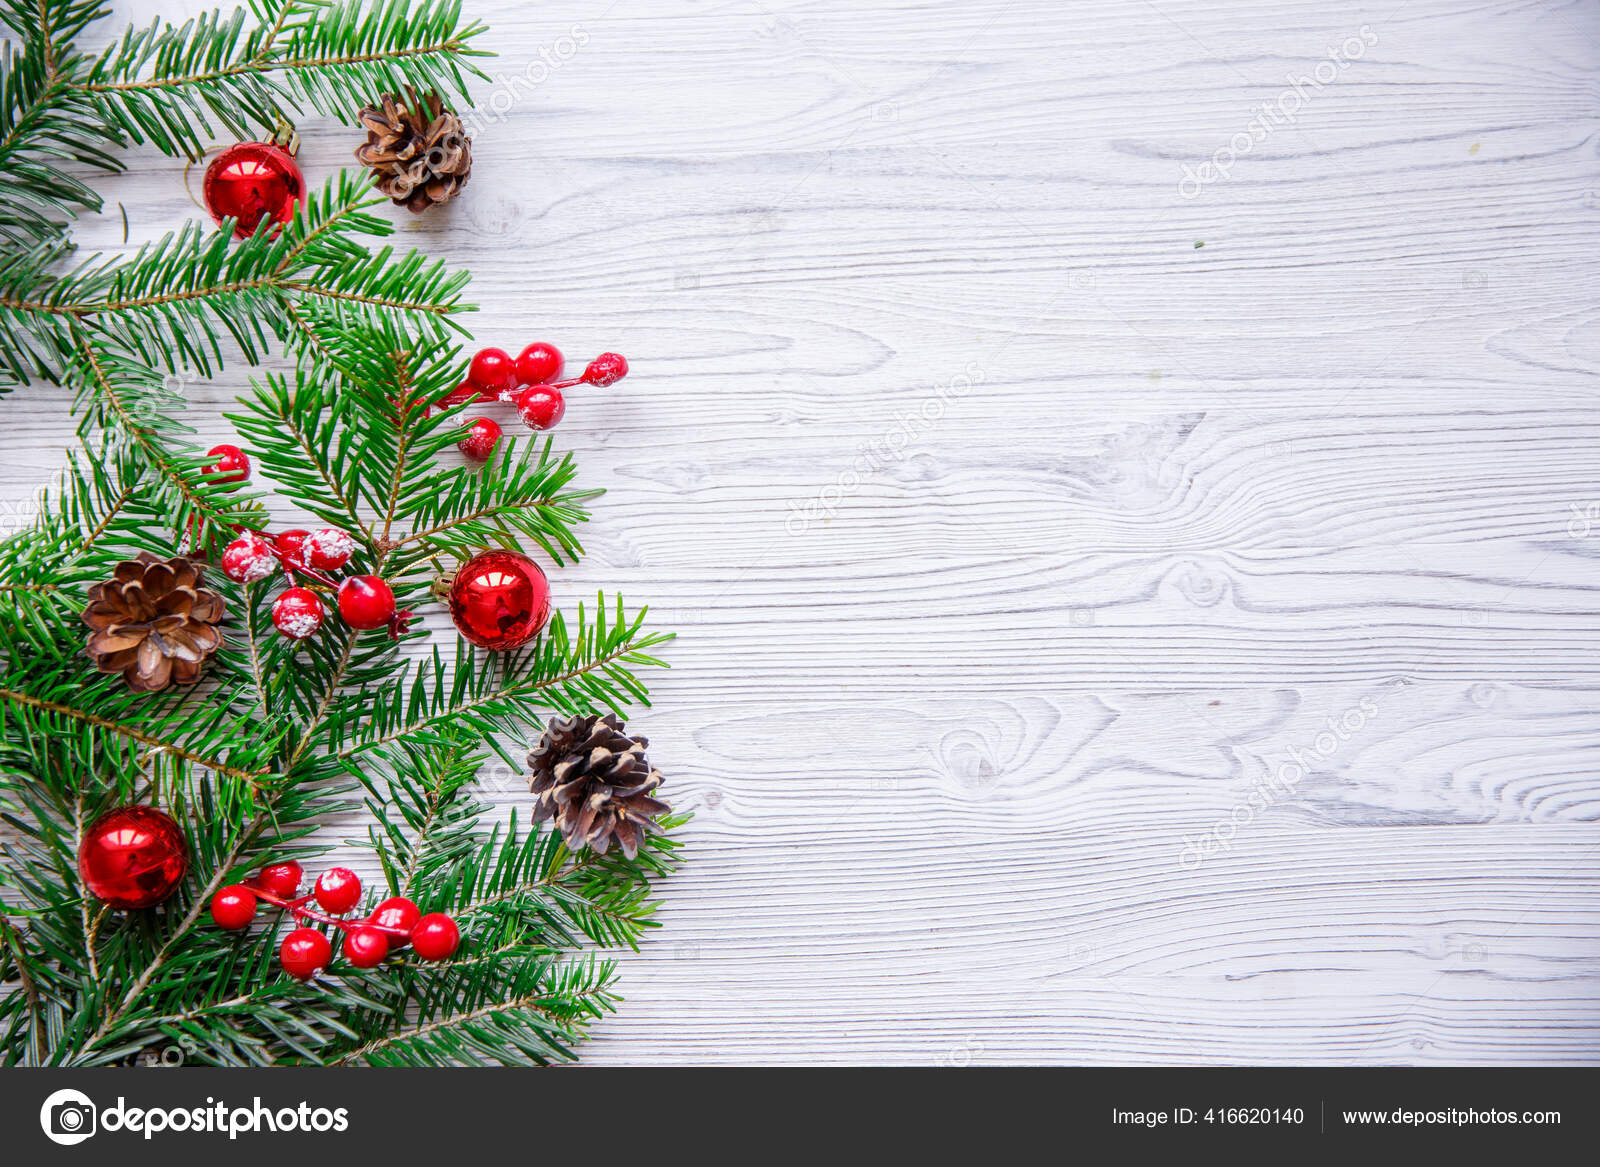 Weihnachten Hintergrund Mit Weihnachtsbaum Und Roten Beeren Auf Weissem Holzhintergrund Stockfotografie Lizenzfreie Fotos C Lesya18 Depositphotos